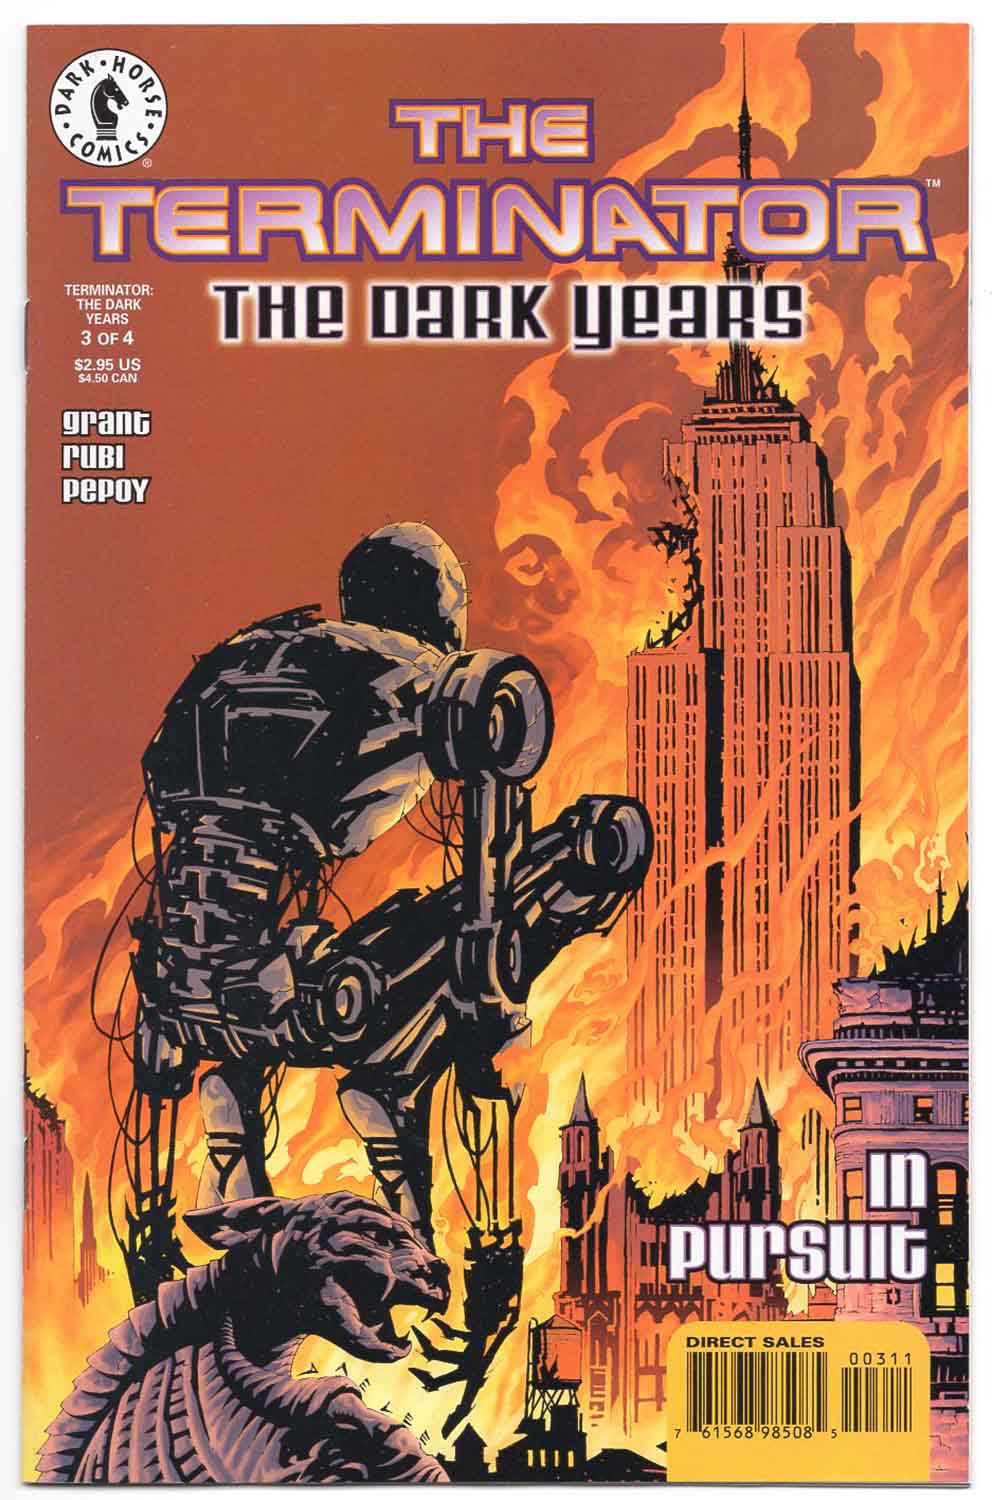 Terminator the Dark Years #3